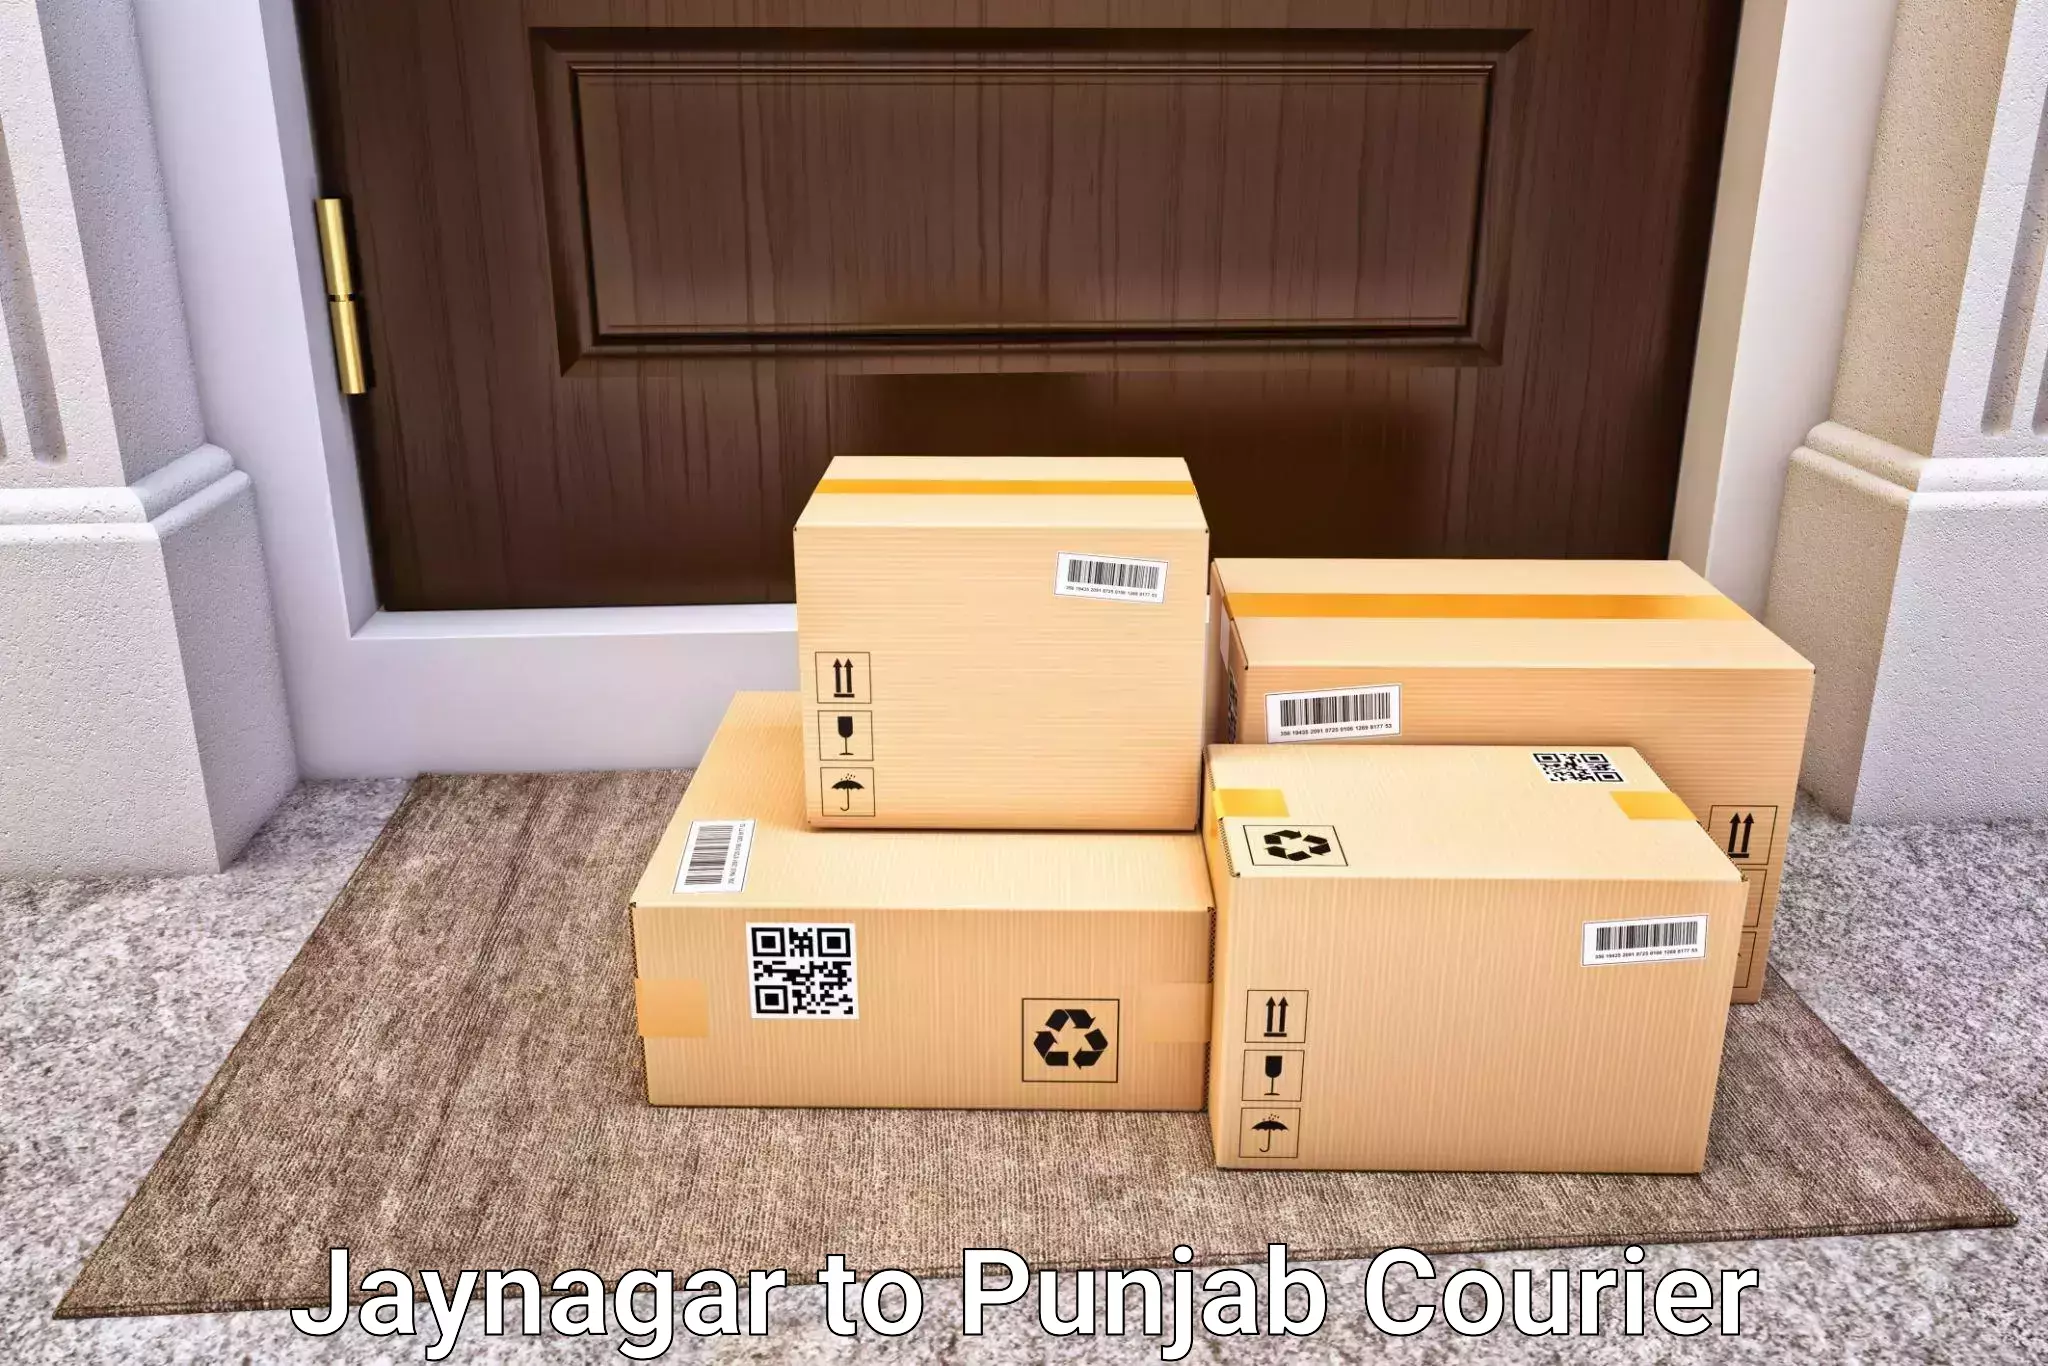 Luggage transport schedule Jaynagar to Faridkot